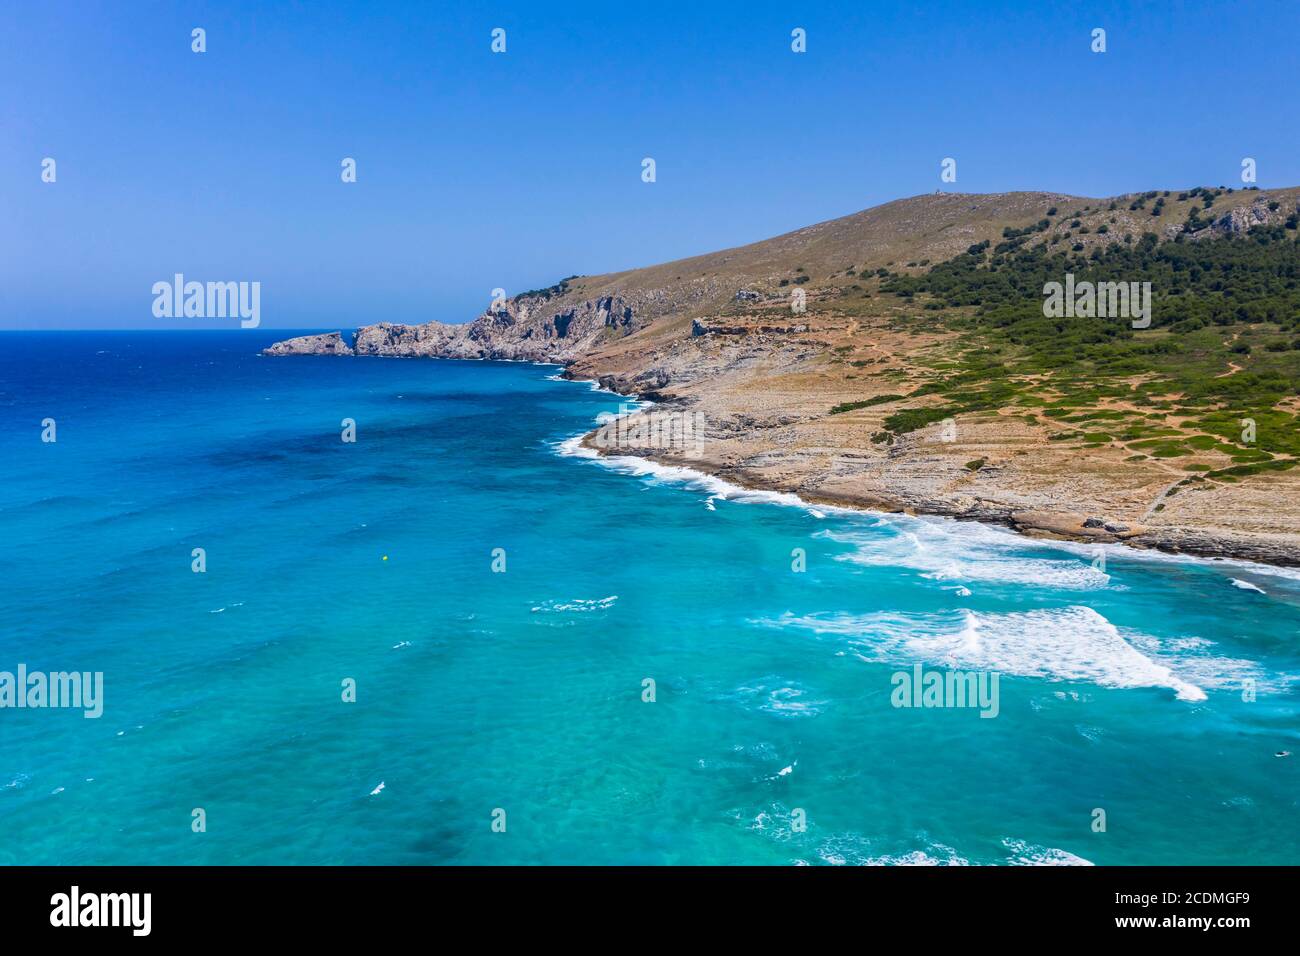 Aerial view, cliffs and beach, Cala Agulla, Cala Mesquida, Majorca, Balearic Islands, Spain Stock Photo